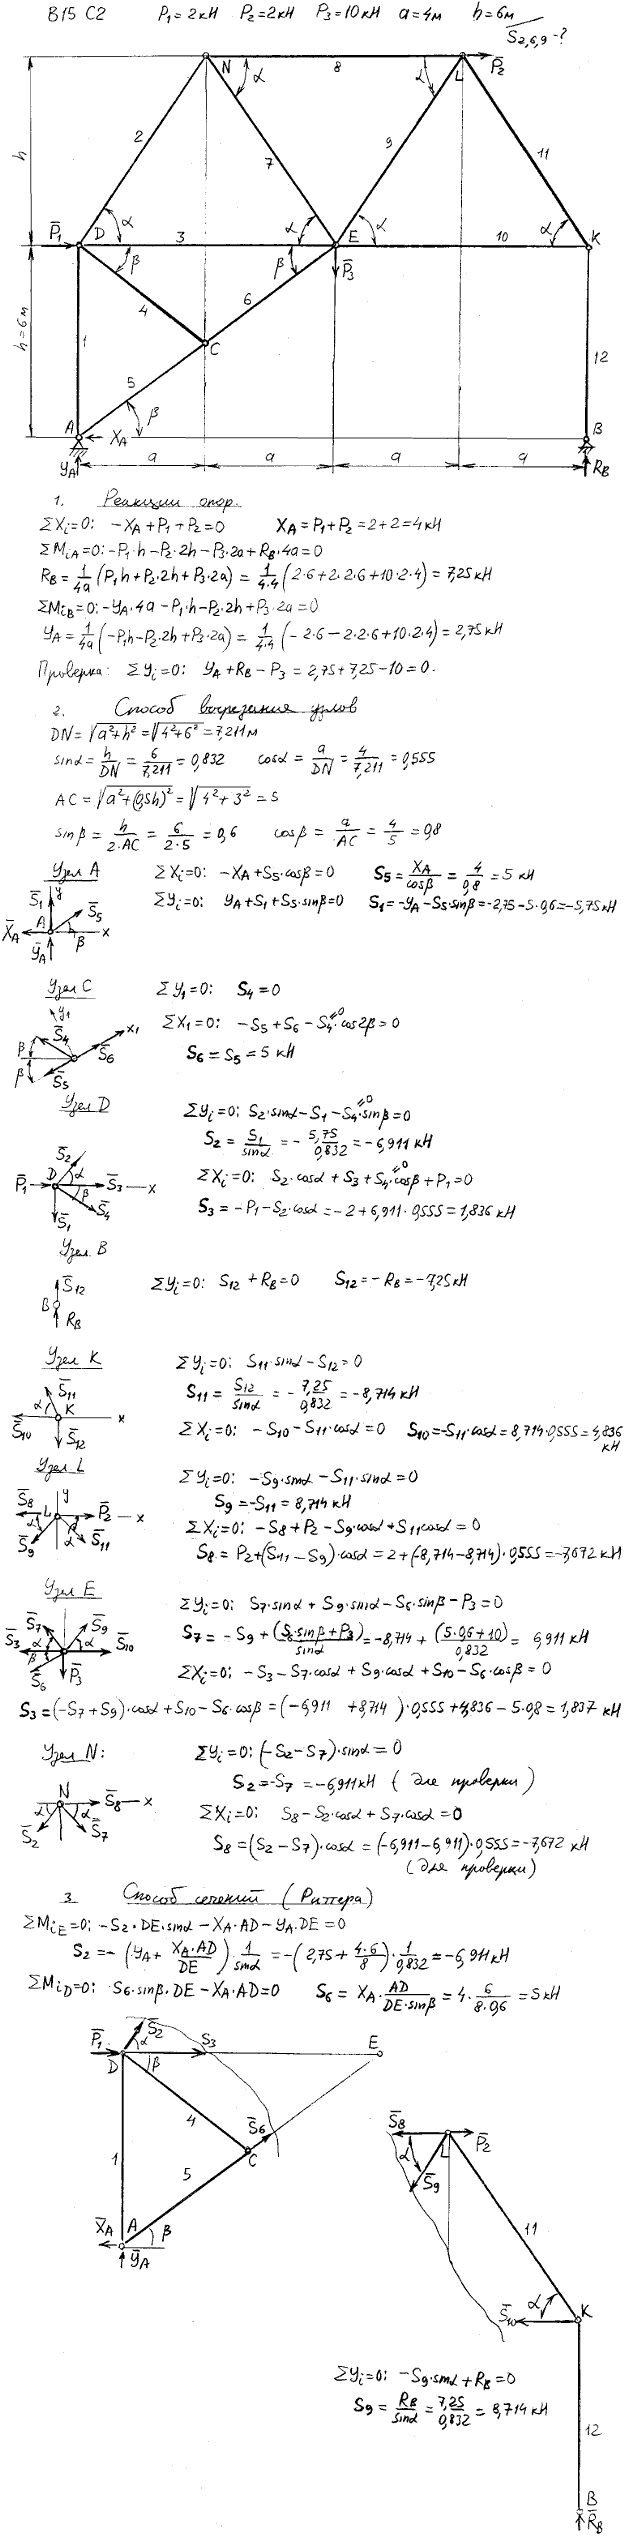 Задание C2 вариант 15. P1=2 кН, P2=2 кН, P3=10 кН, a=4 м, h=6 м, номер стержня 2, 6, 9.